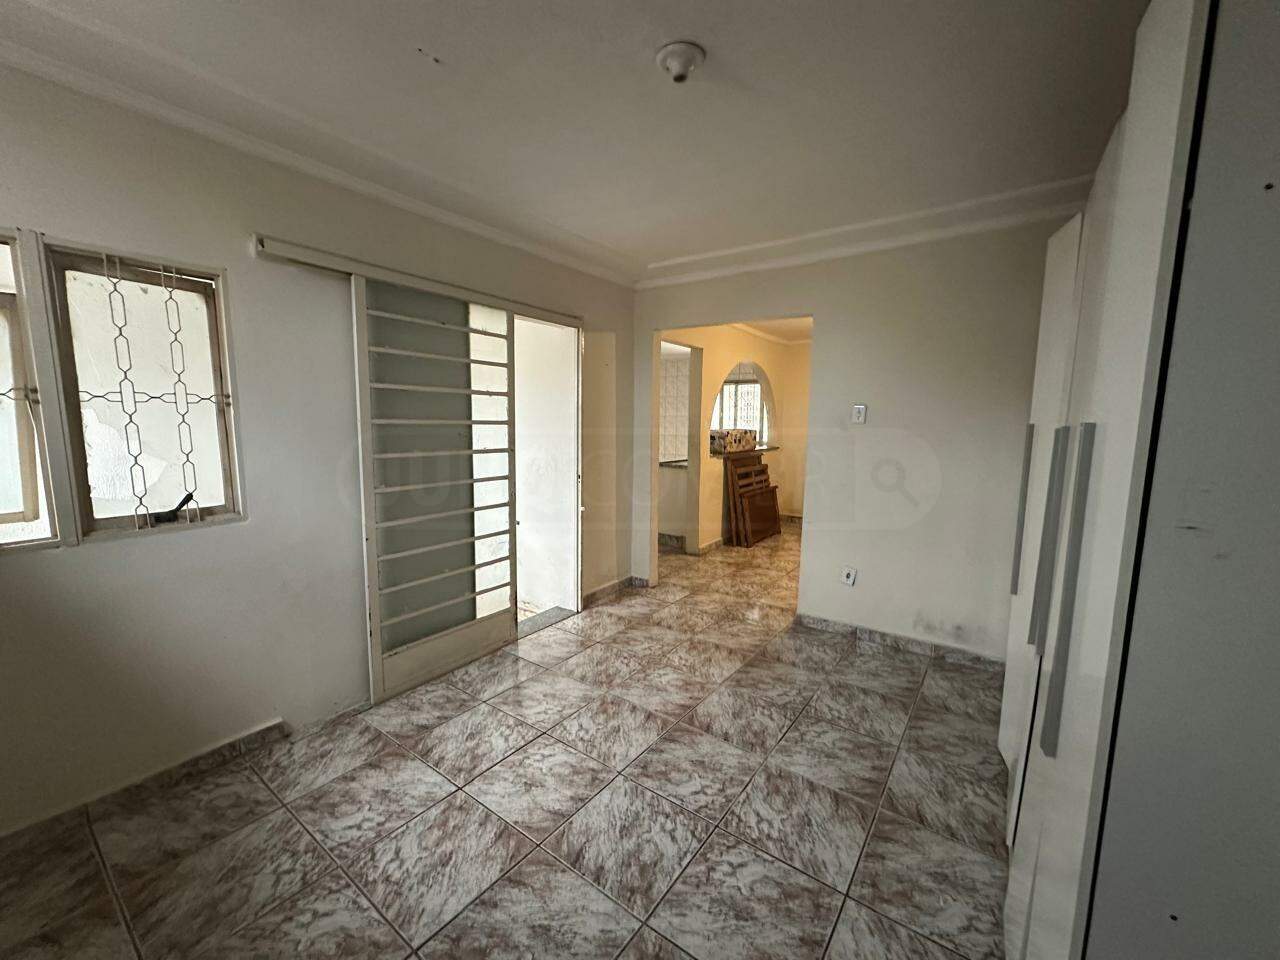 Casa à venda, 2 quartos, 2 vagas, no bairro Vila Industrial em Piracicaba - SP